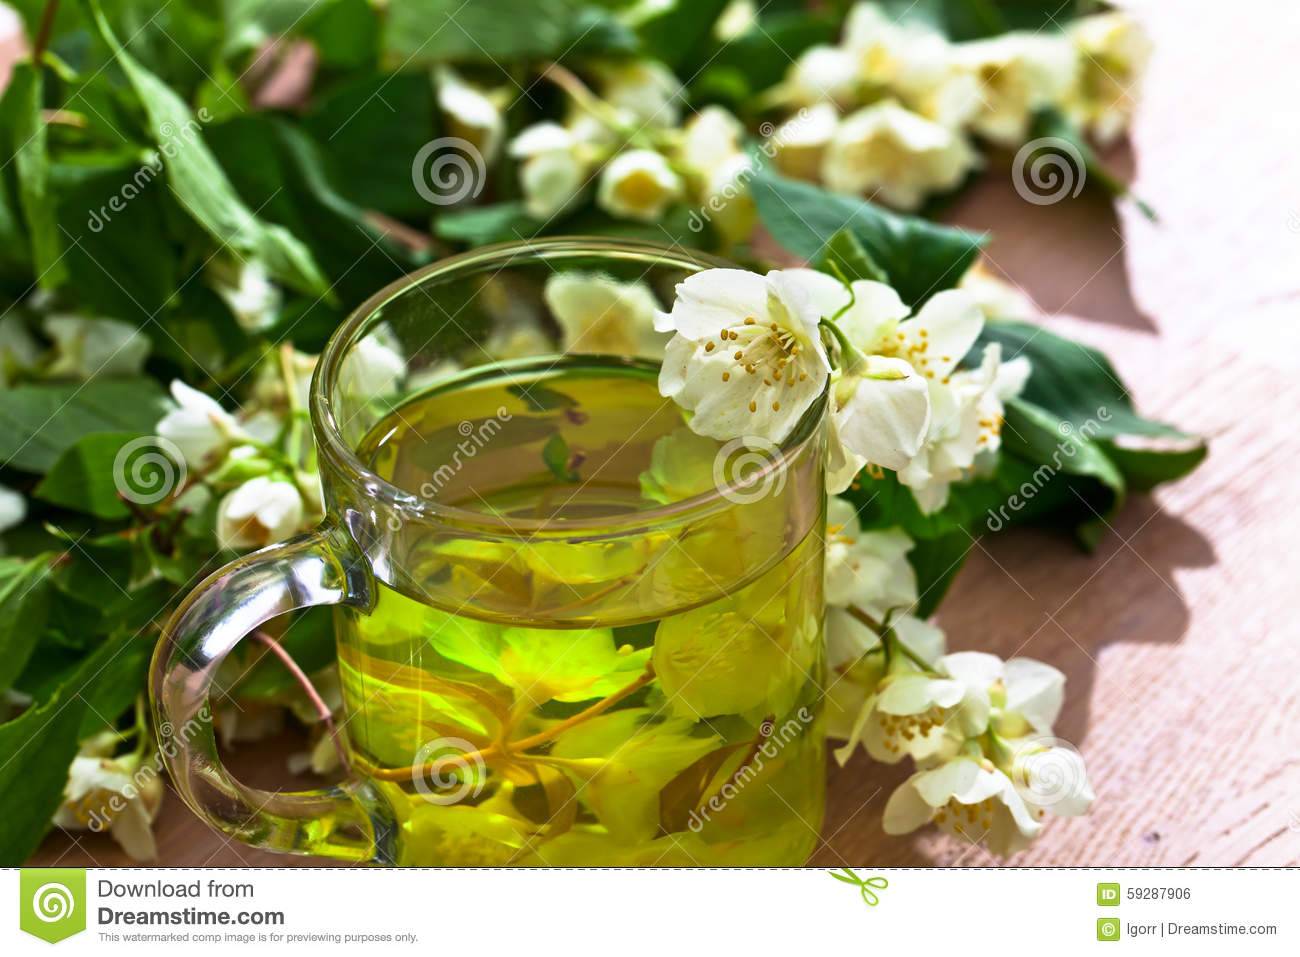 Полезные свойства зеленого чая с жасмином, его вред и противопоказания